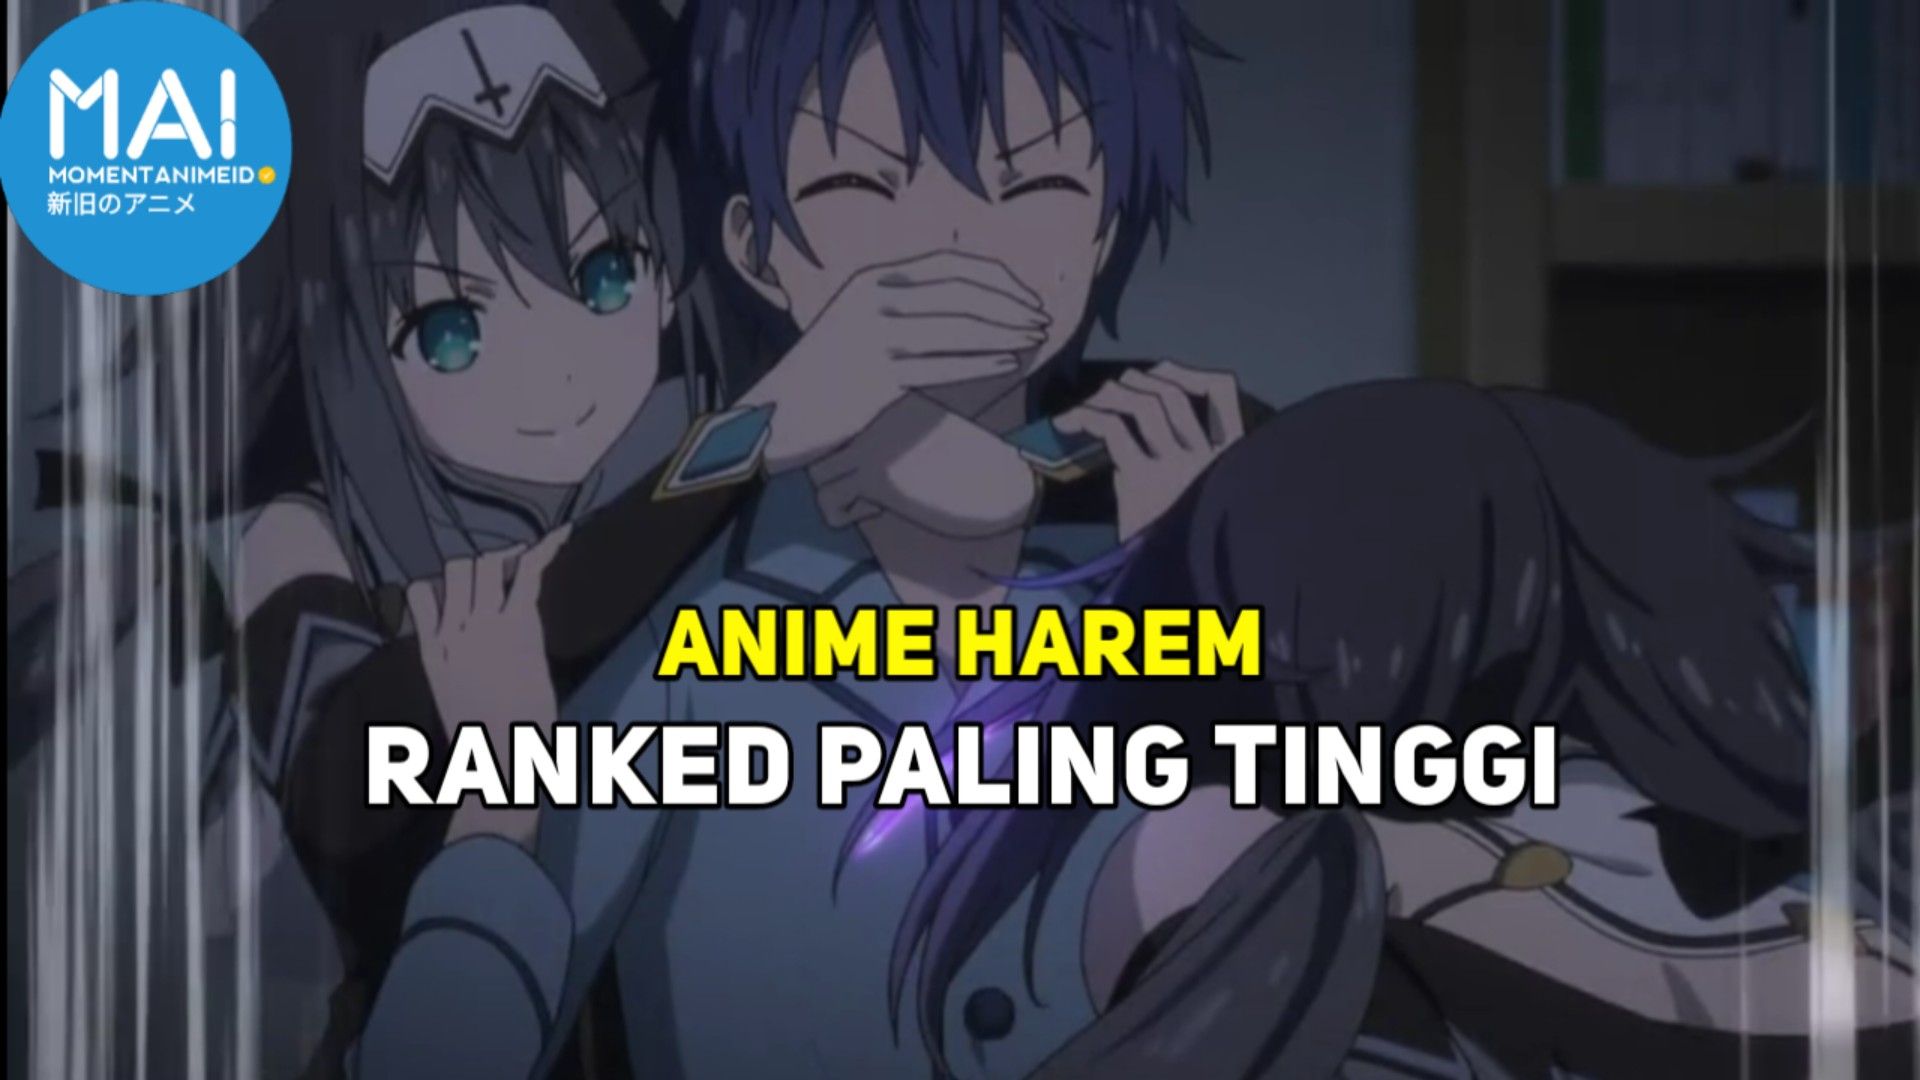 The harem king of 100 girlfriends | Anime memes, Anime, Anime jokes